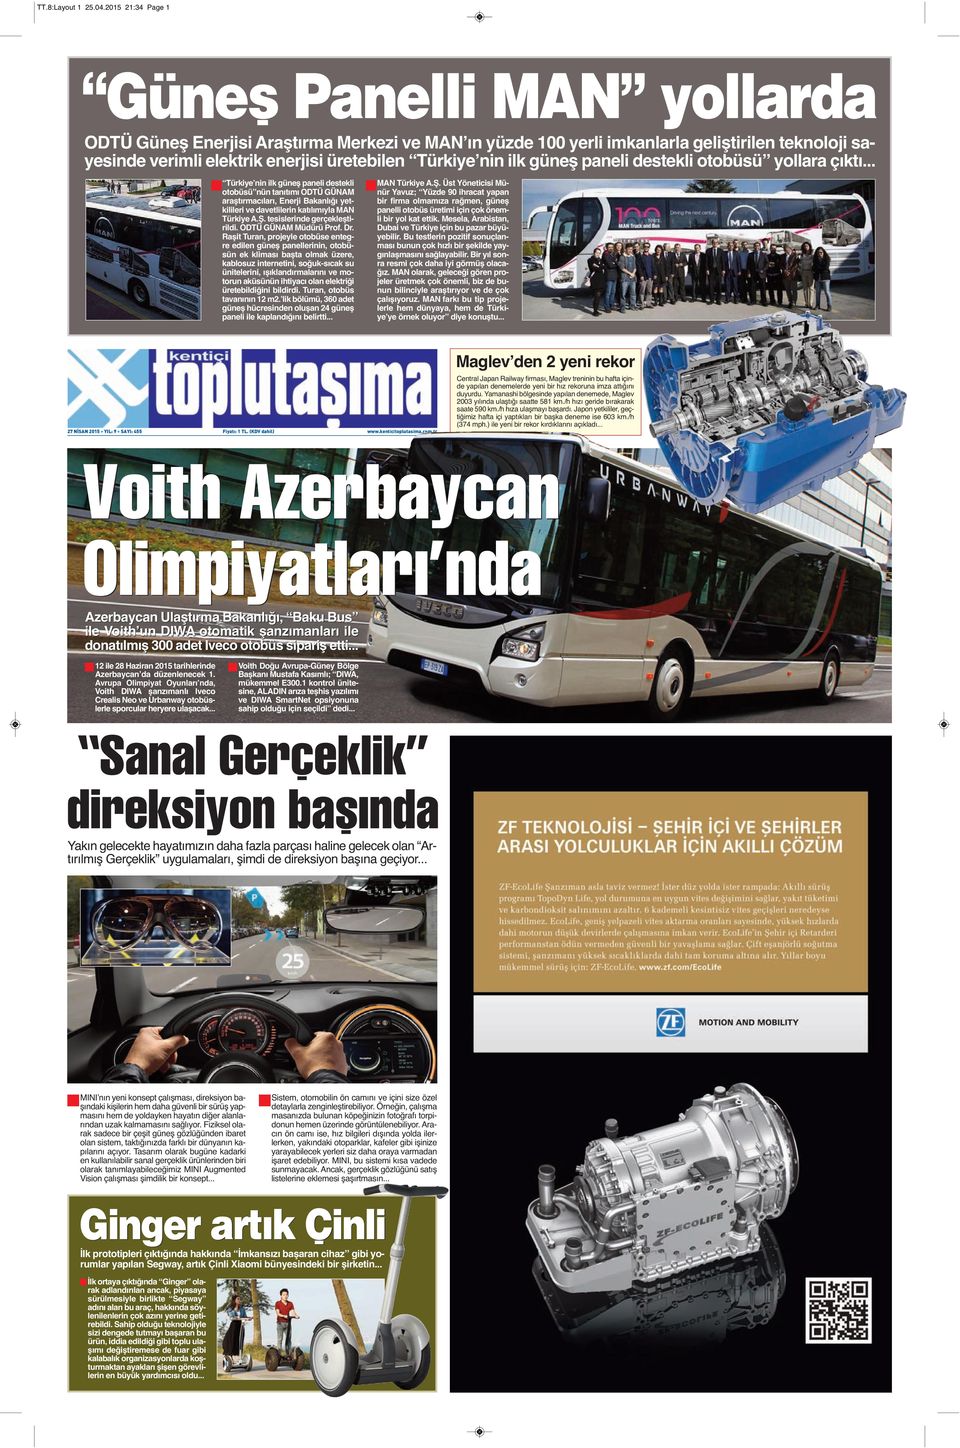 Türkiyeʼnin ilk güneş paneli destekli otobüsü yollara çıktı.